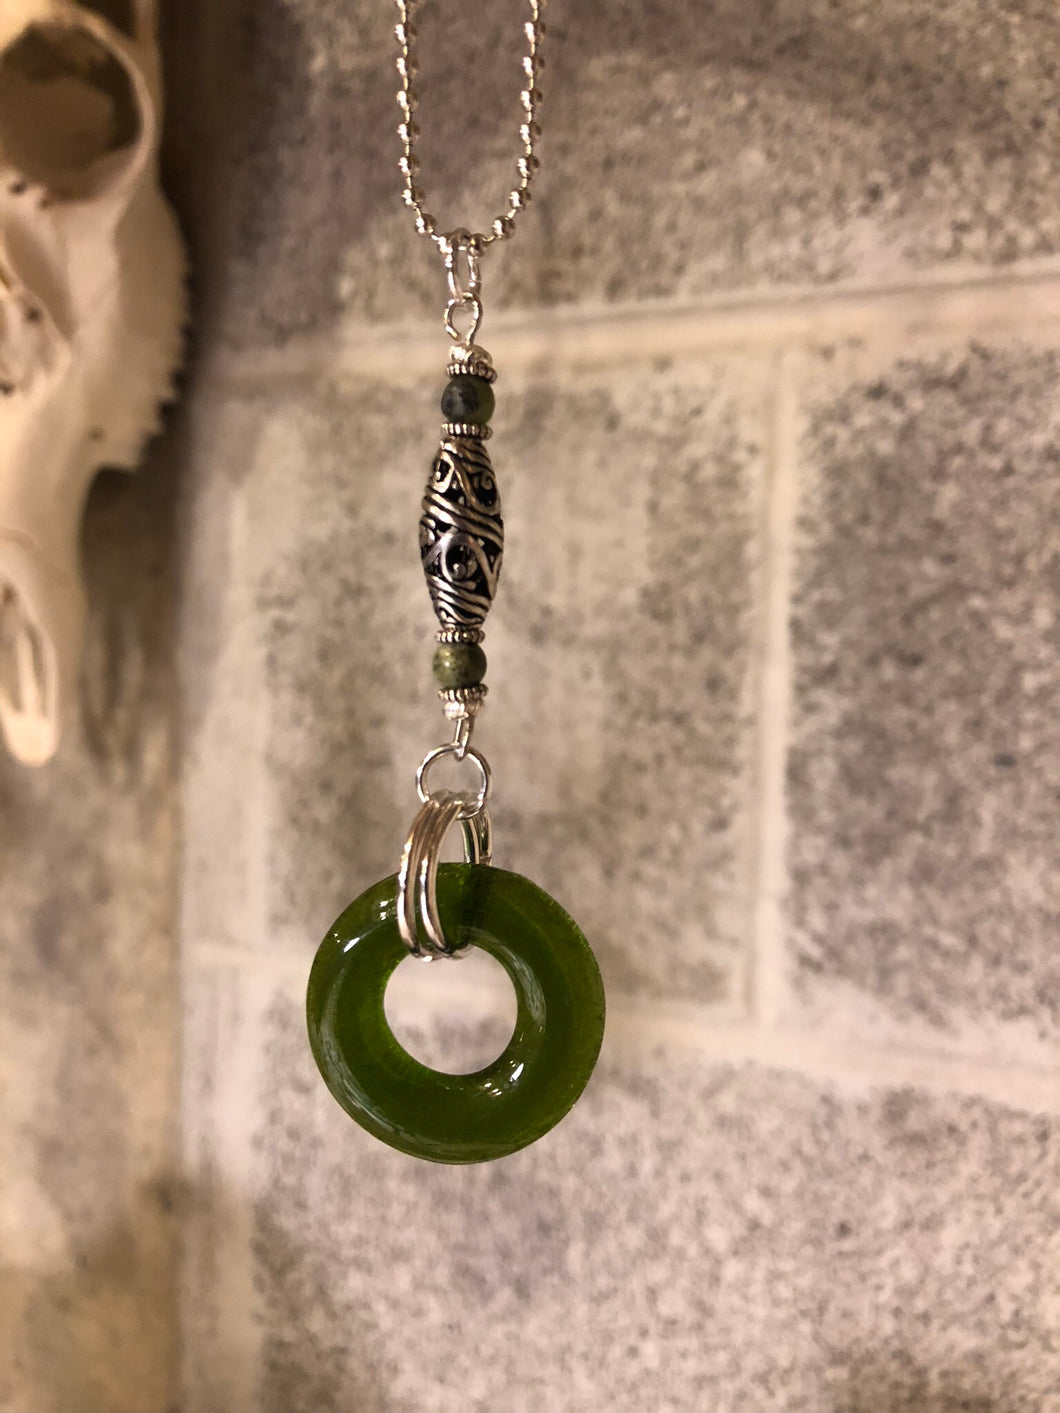 Upcycled wine bottle pendant